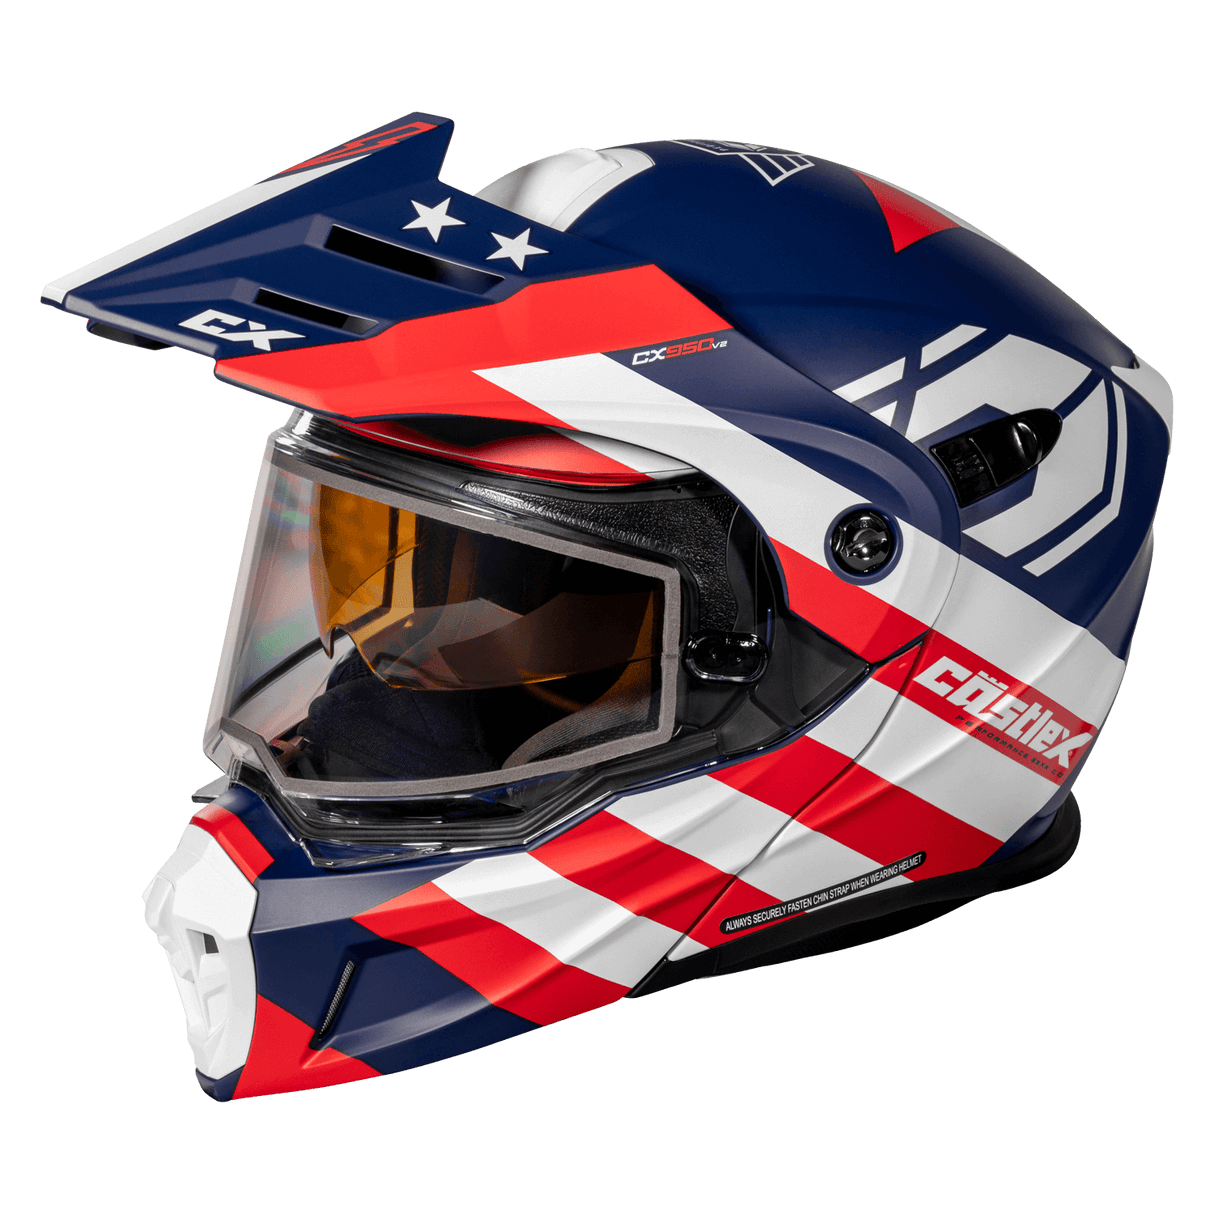 Castle - CX950 Siege Helmet